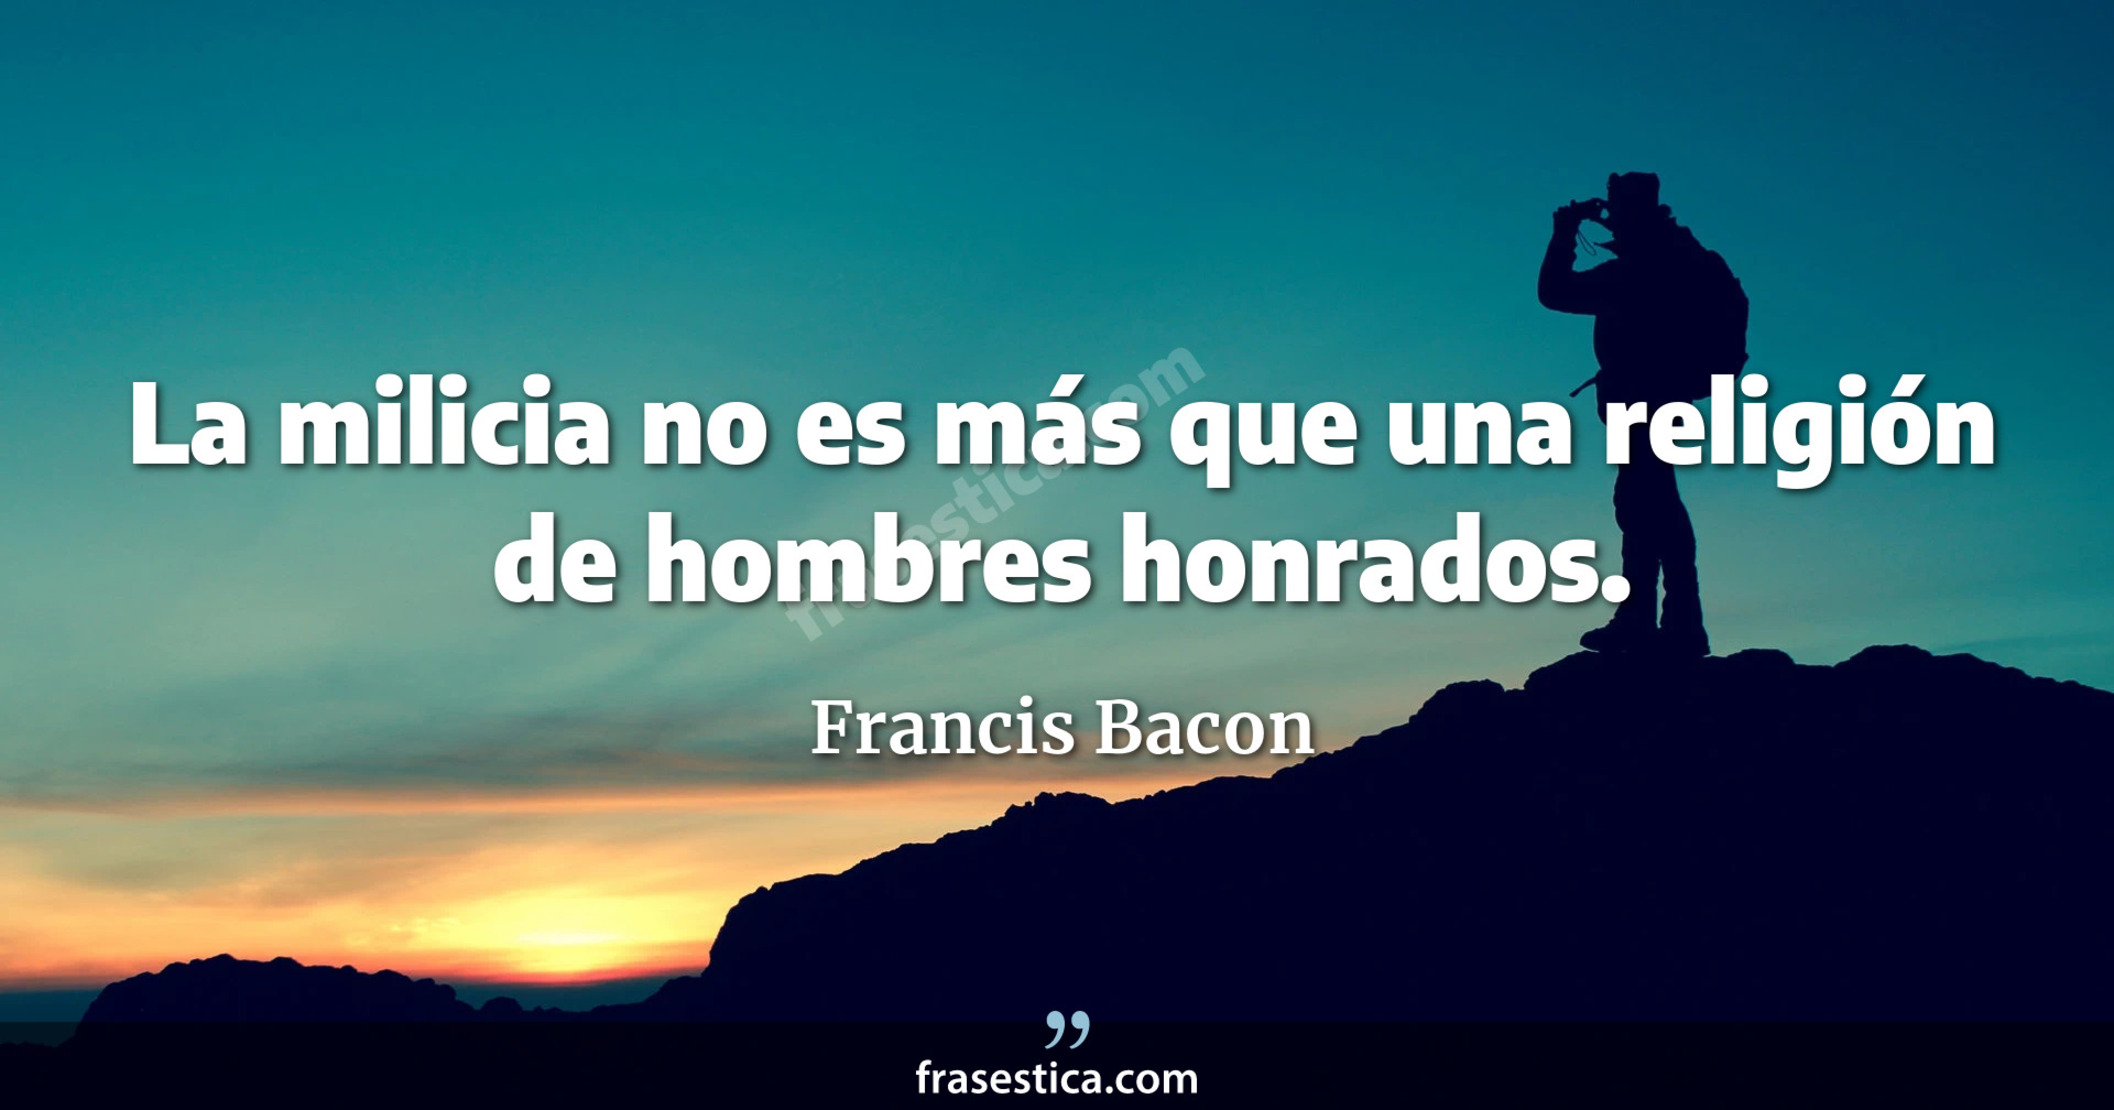 La milicia no es más que una religión de hombres honrados. - Francis Bacon